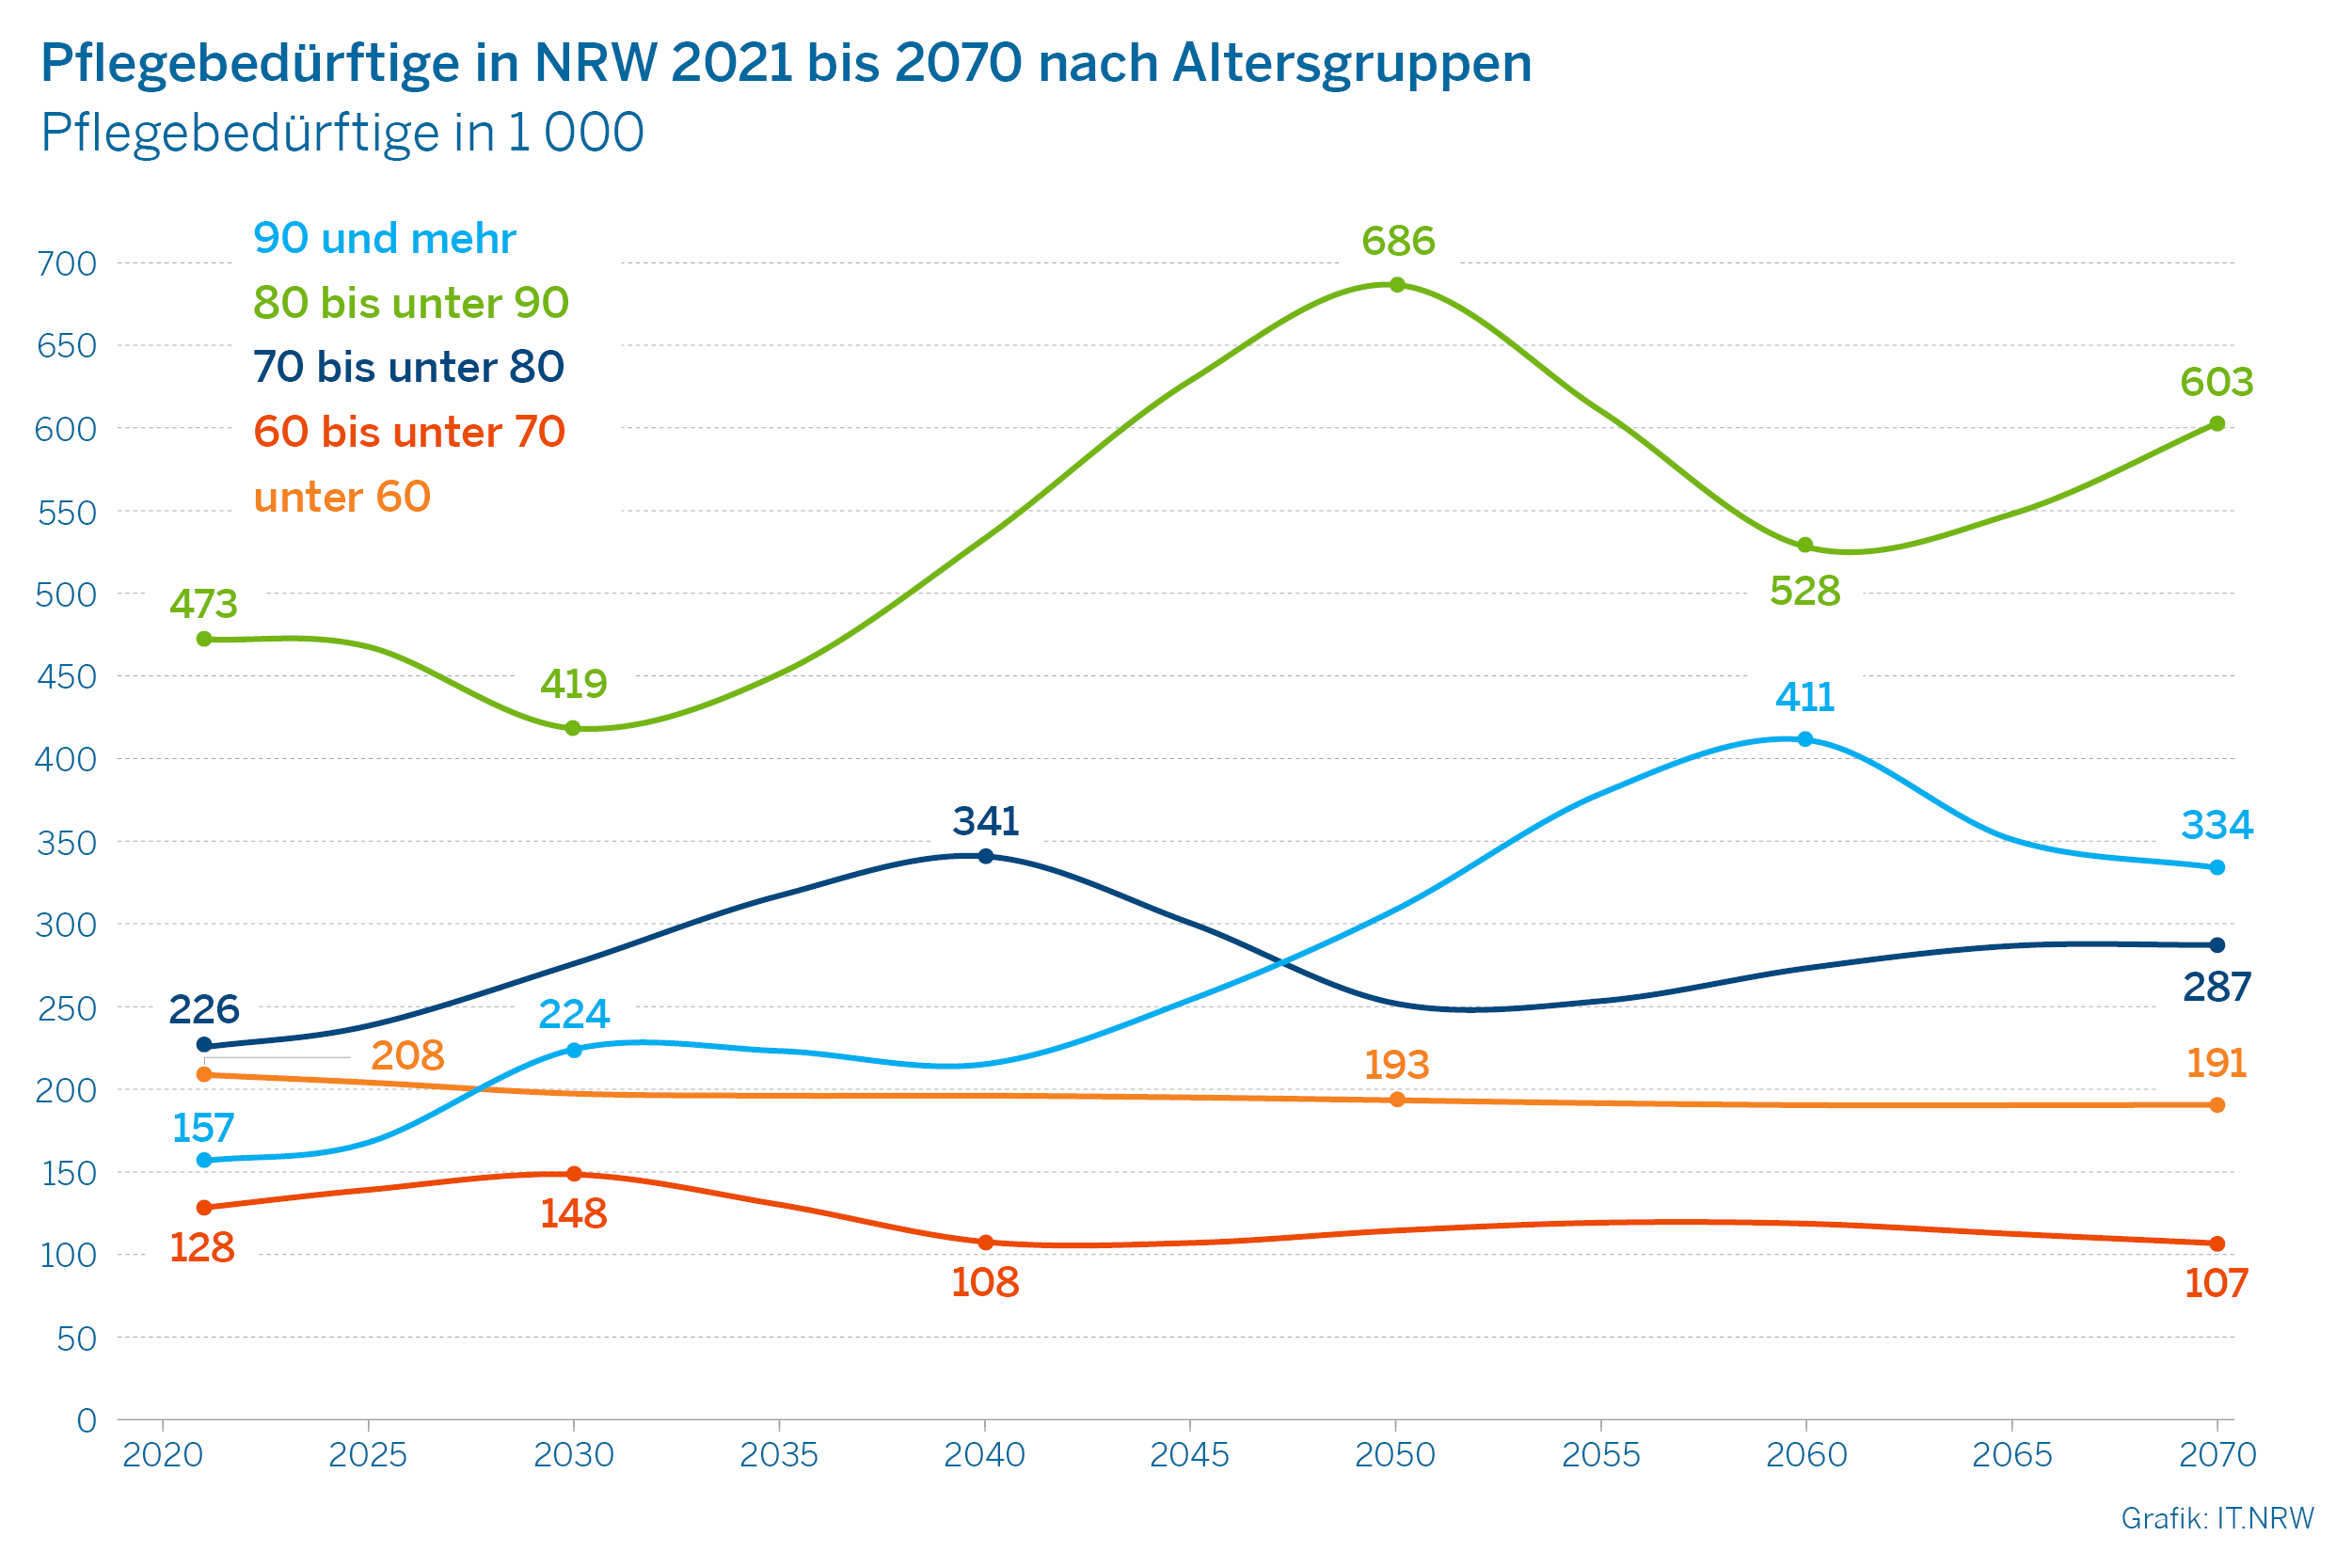 Pflegebedürftige 2021 bis 2070 nach Altersgruppen